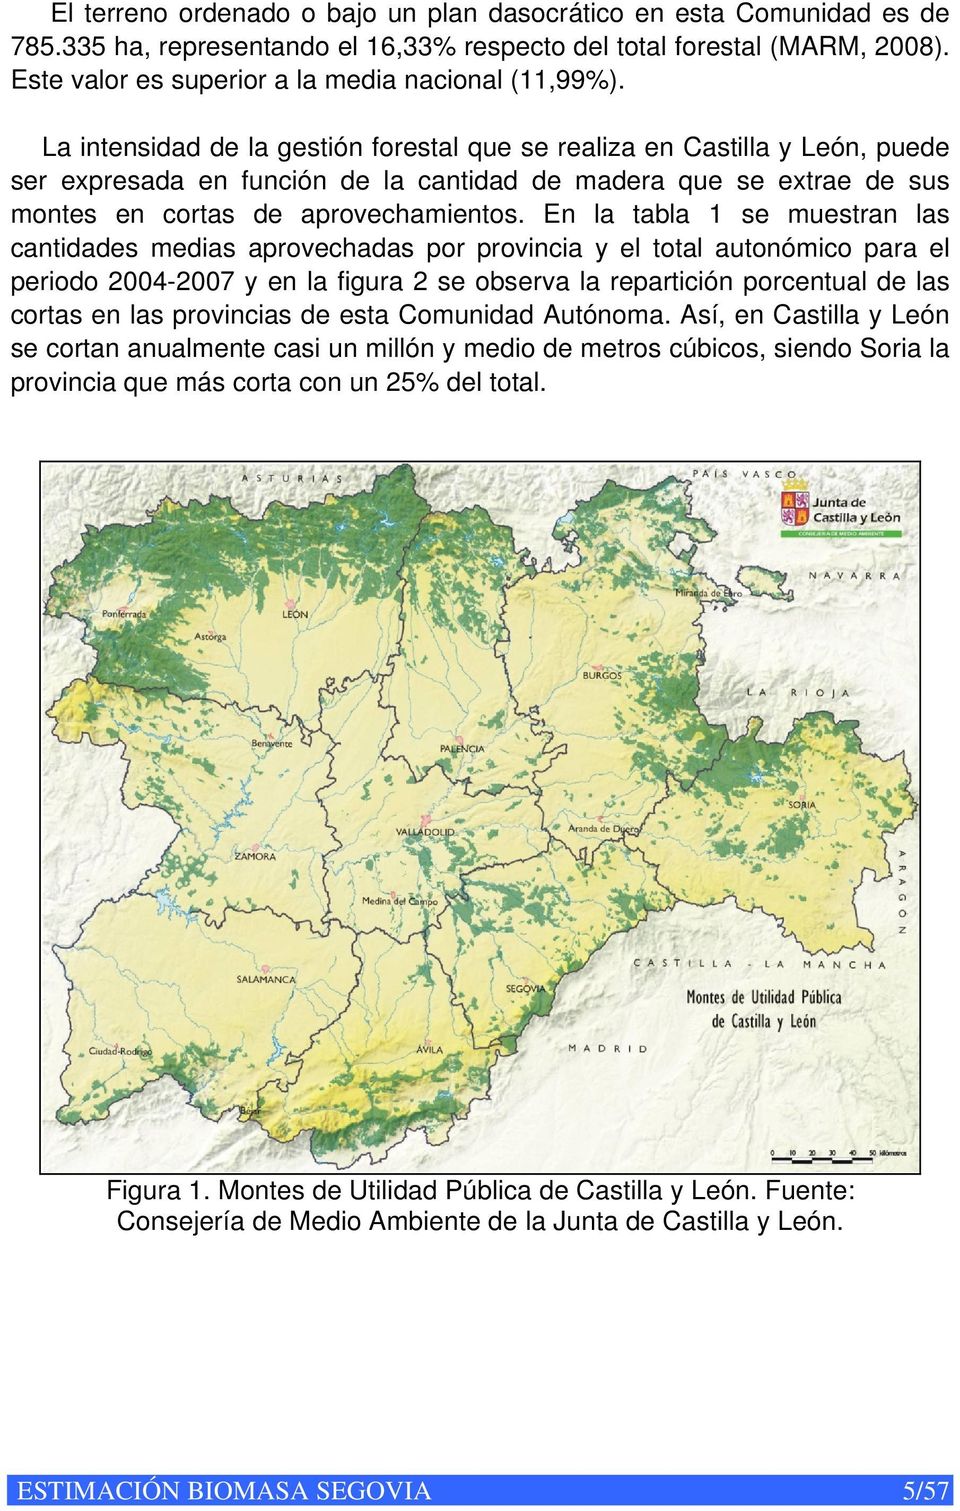 La intensidad de la gestión forestal que se realiza en Castilla y León, puede ser expresada en función de la cantidad de madera que se extrae de sus montes en cortas de aprovechamientos.